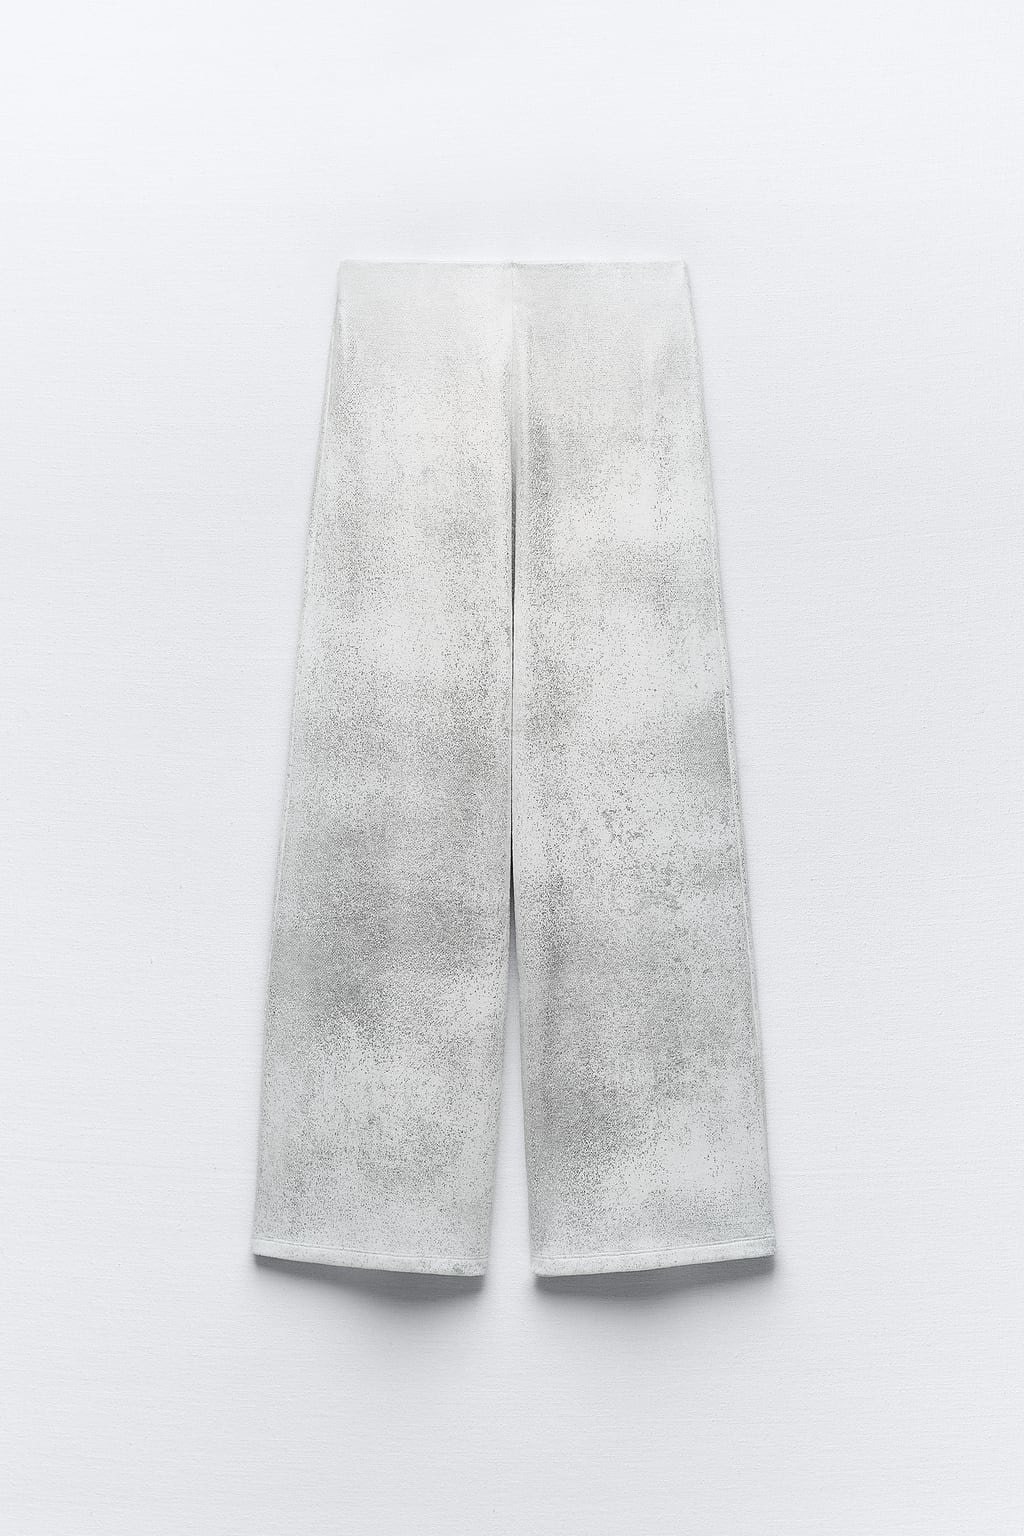 los pantalones metalizados tipo chándal de zara son un sí